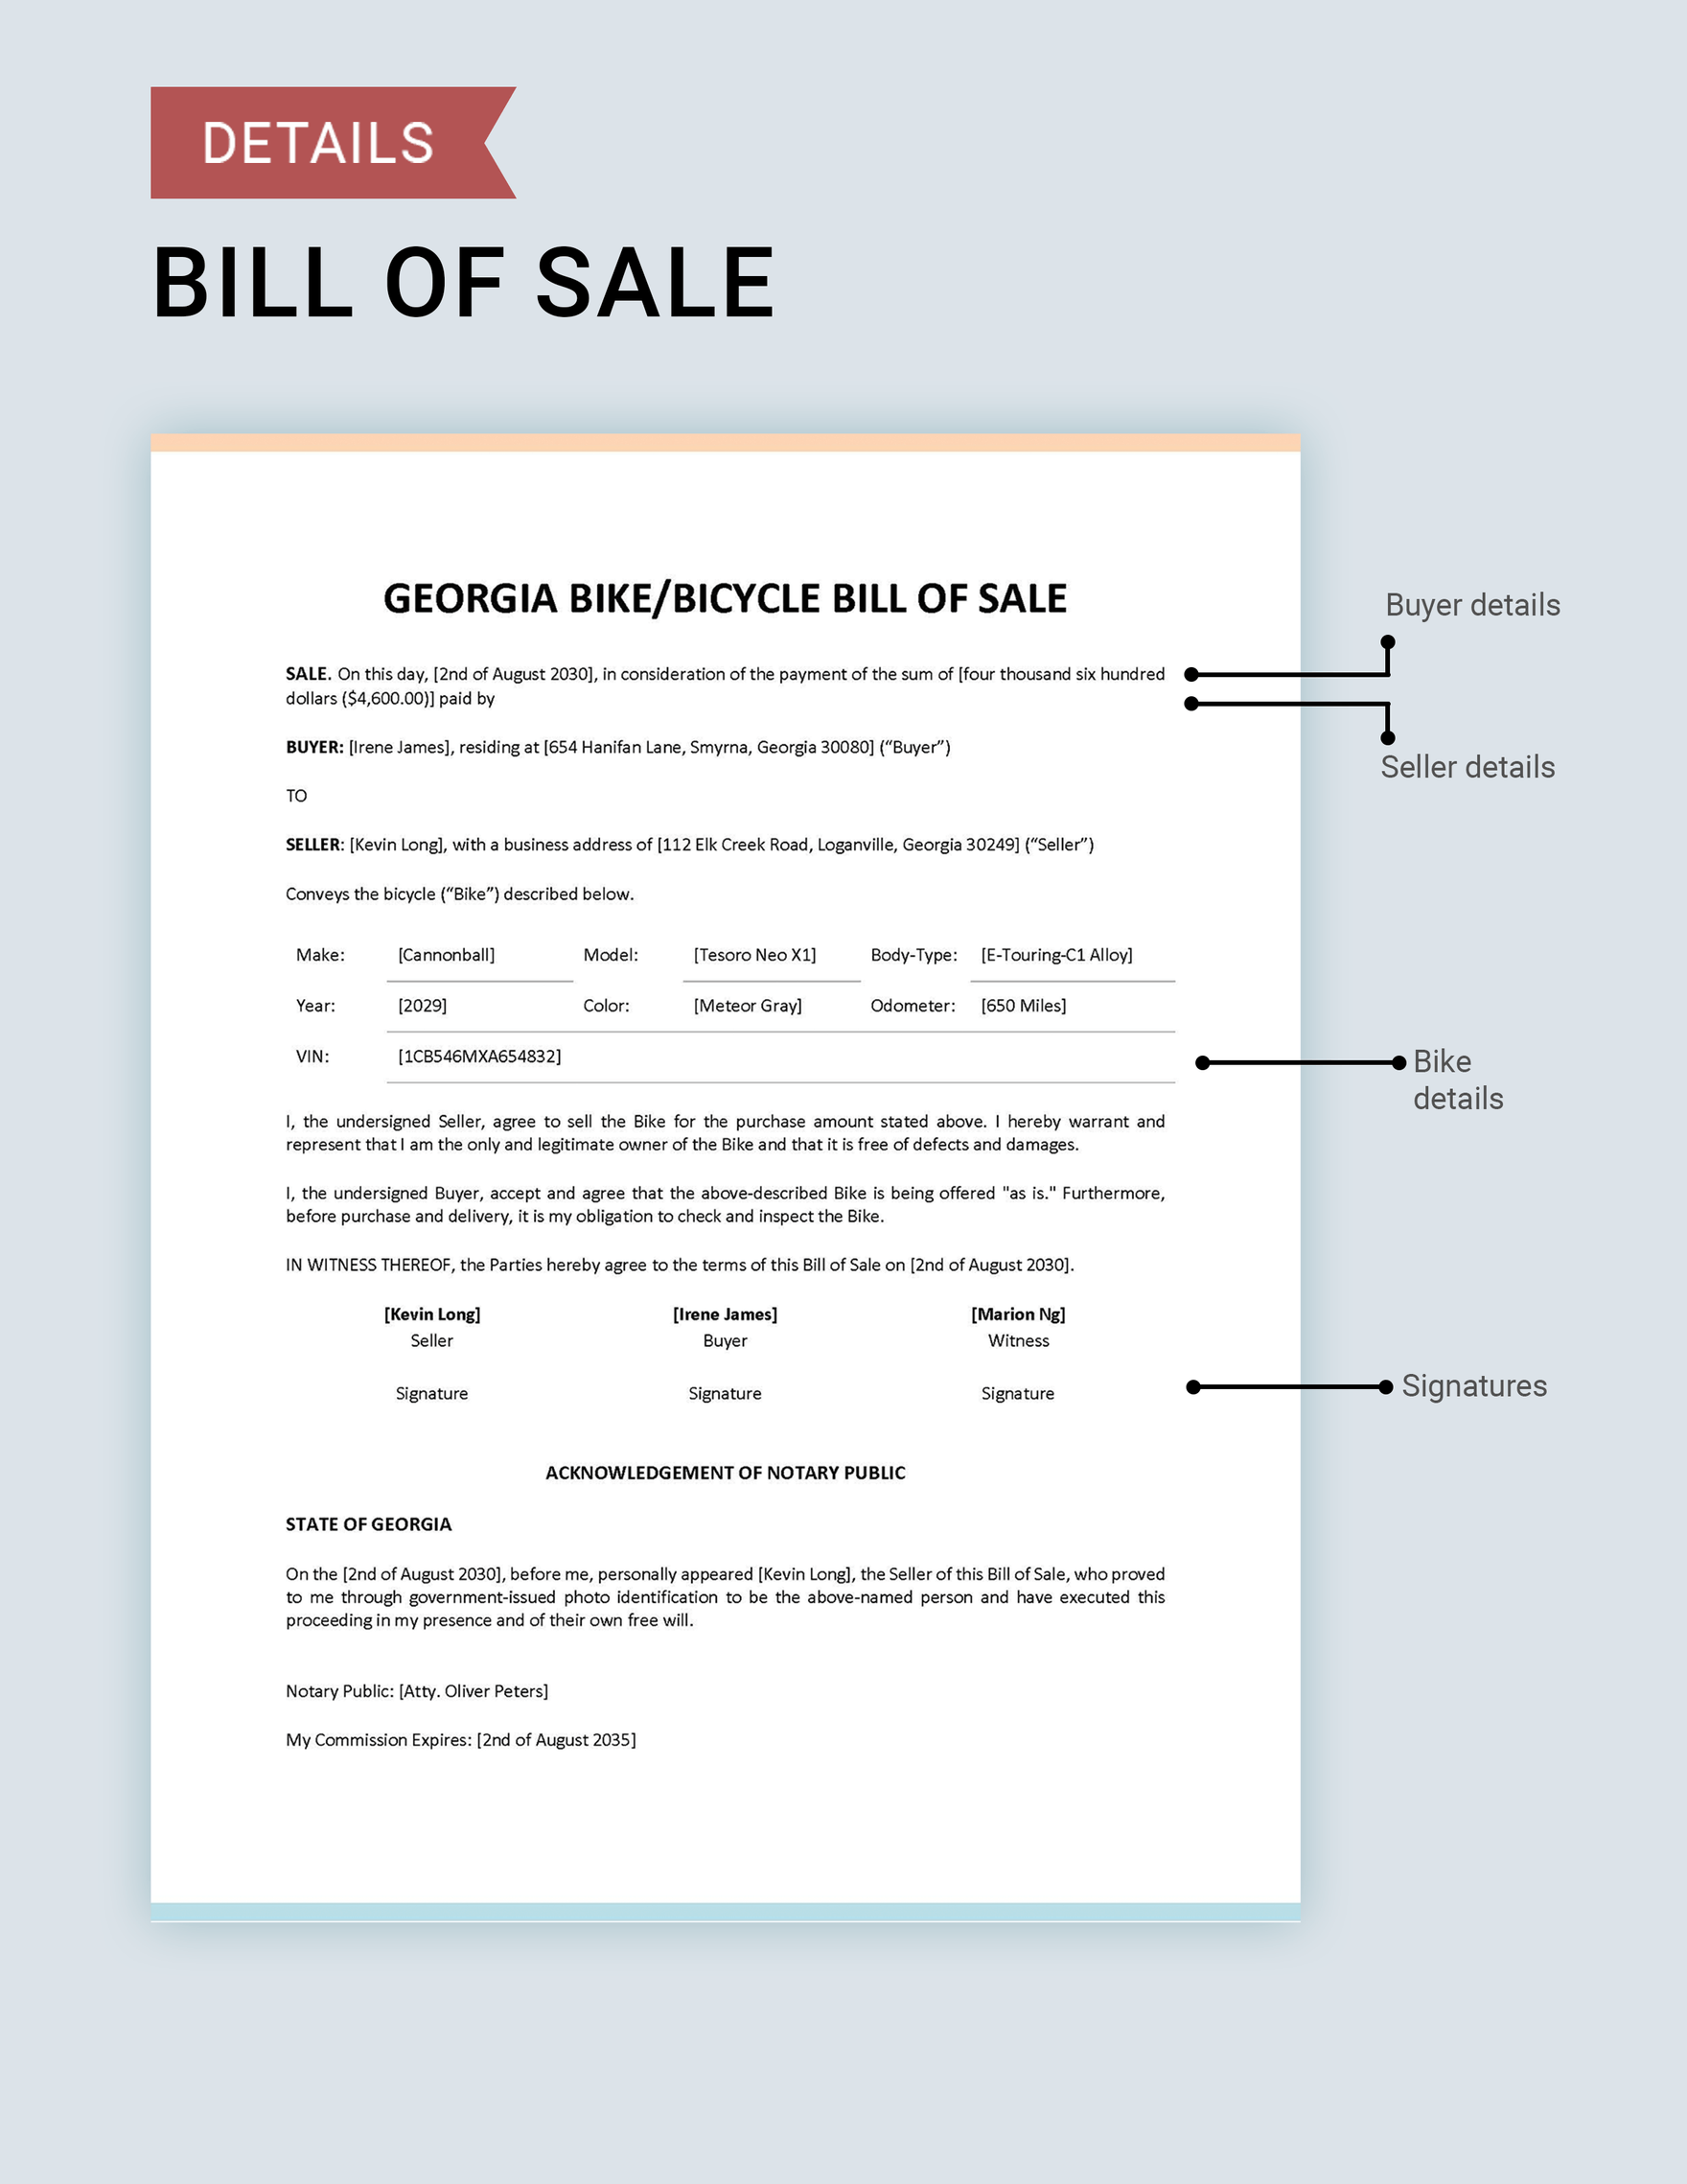 Georgia Bike/ Bicycle Bill of Sale Template